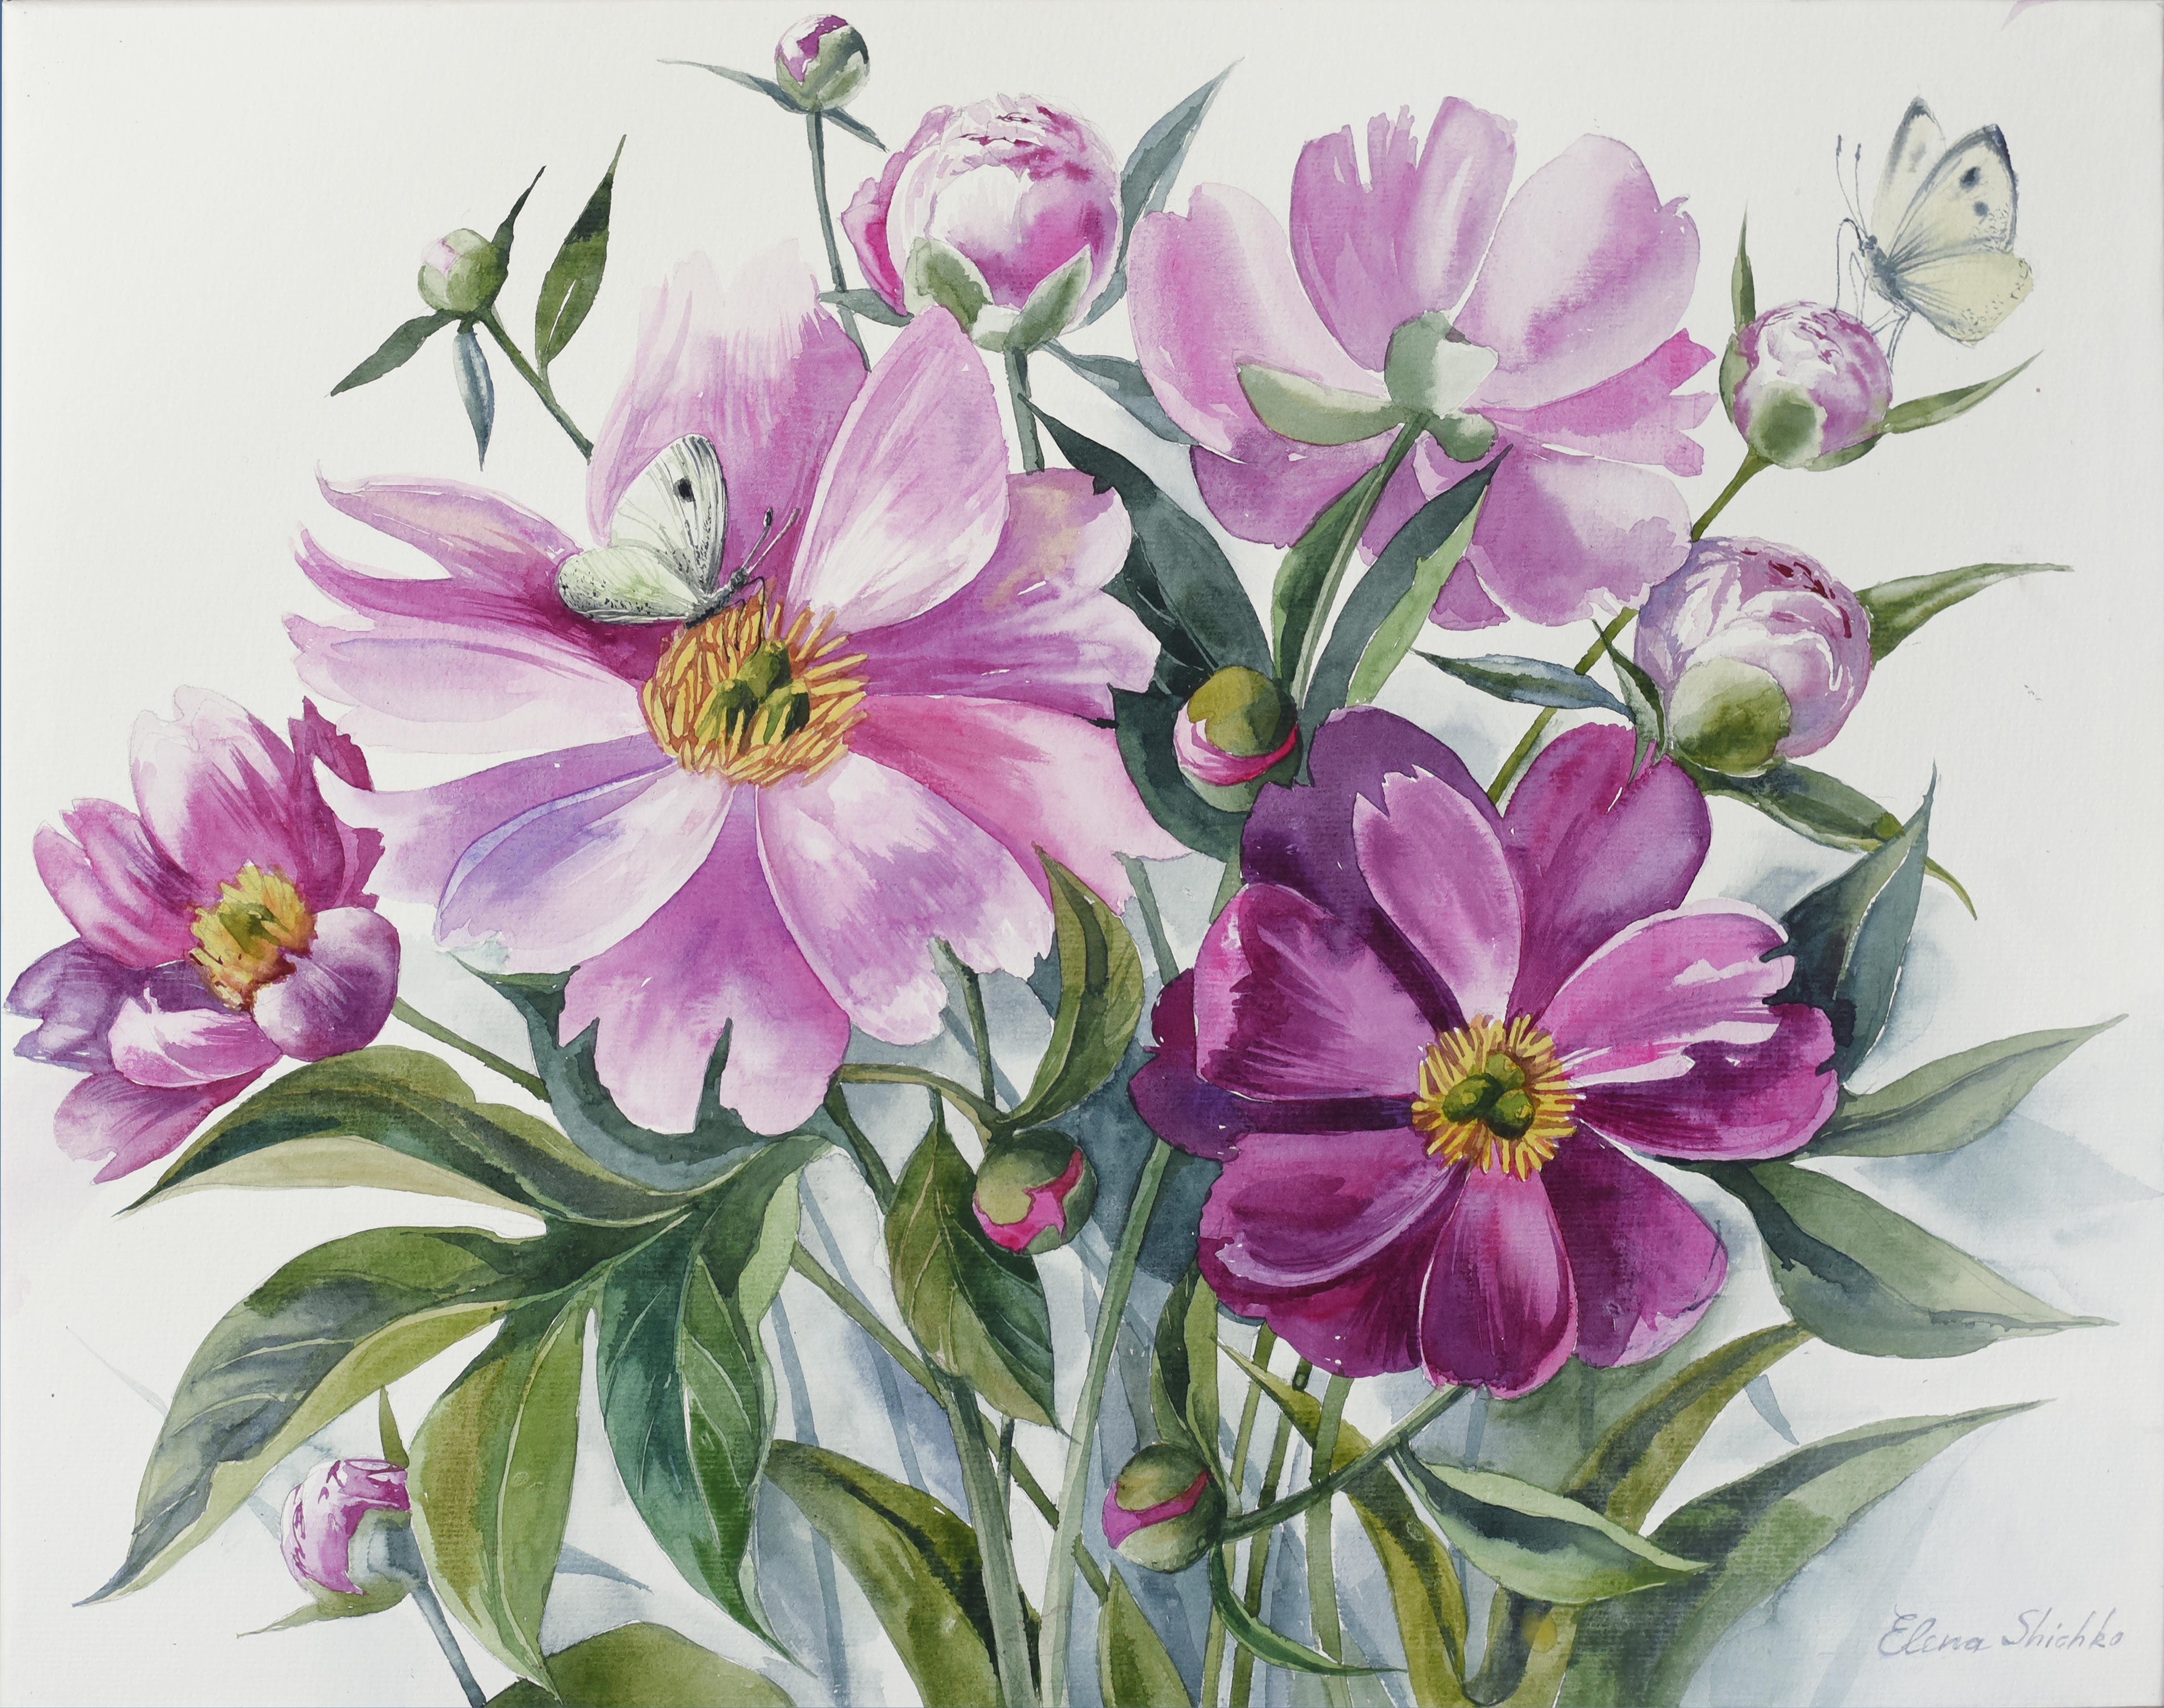 Landscape Painting Elena Shichko - Aquarelle de pivoines rose